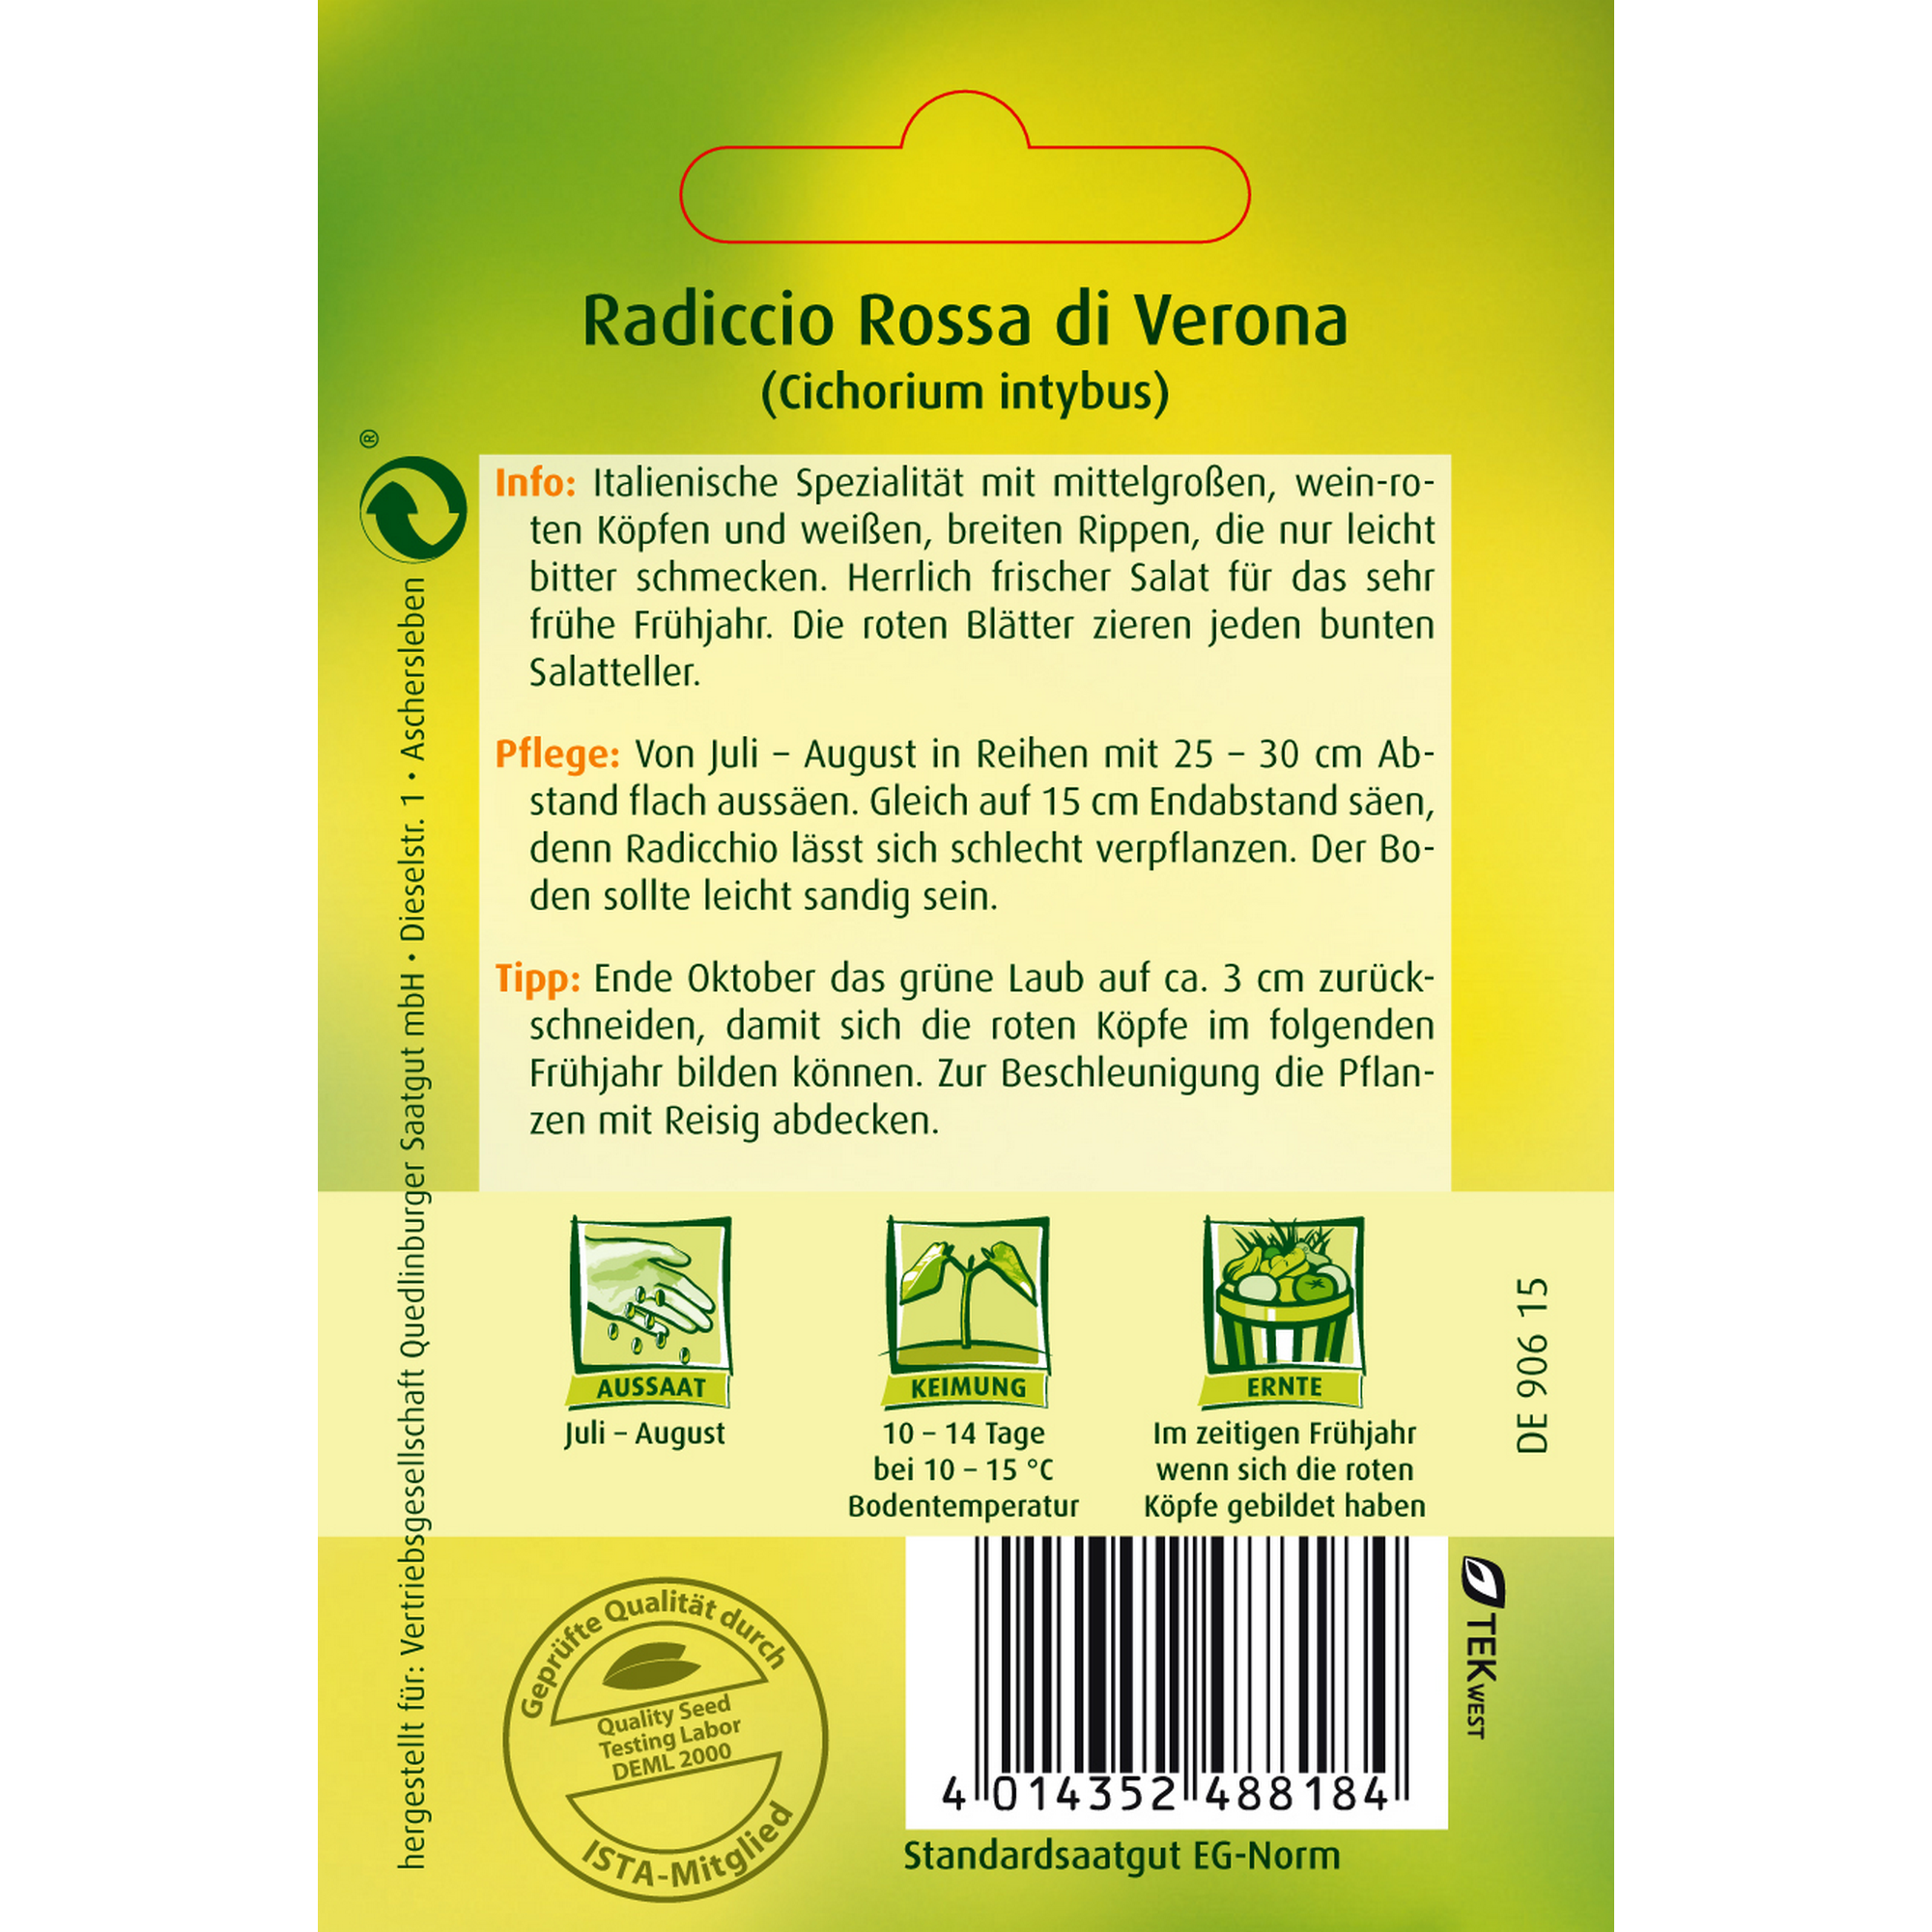 Radicchio 'Rossa di Verona' + product picture